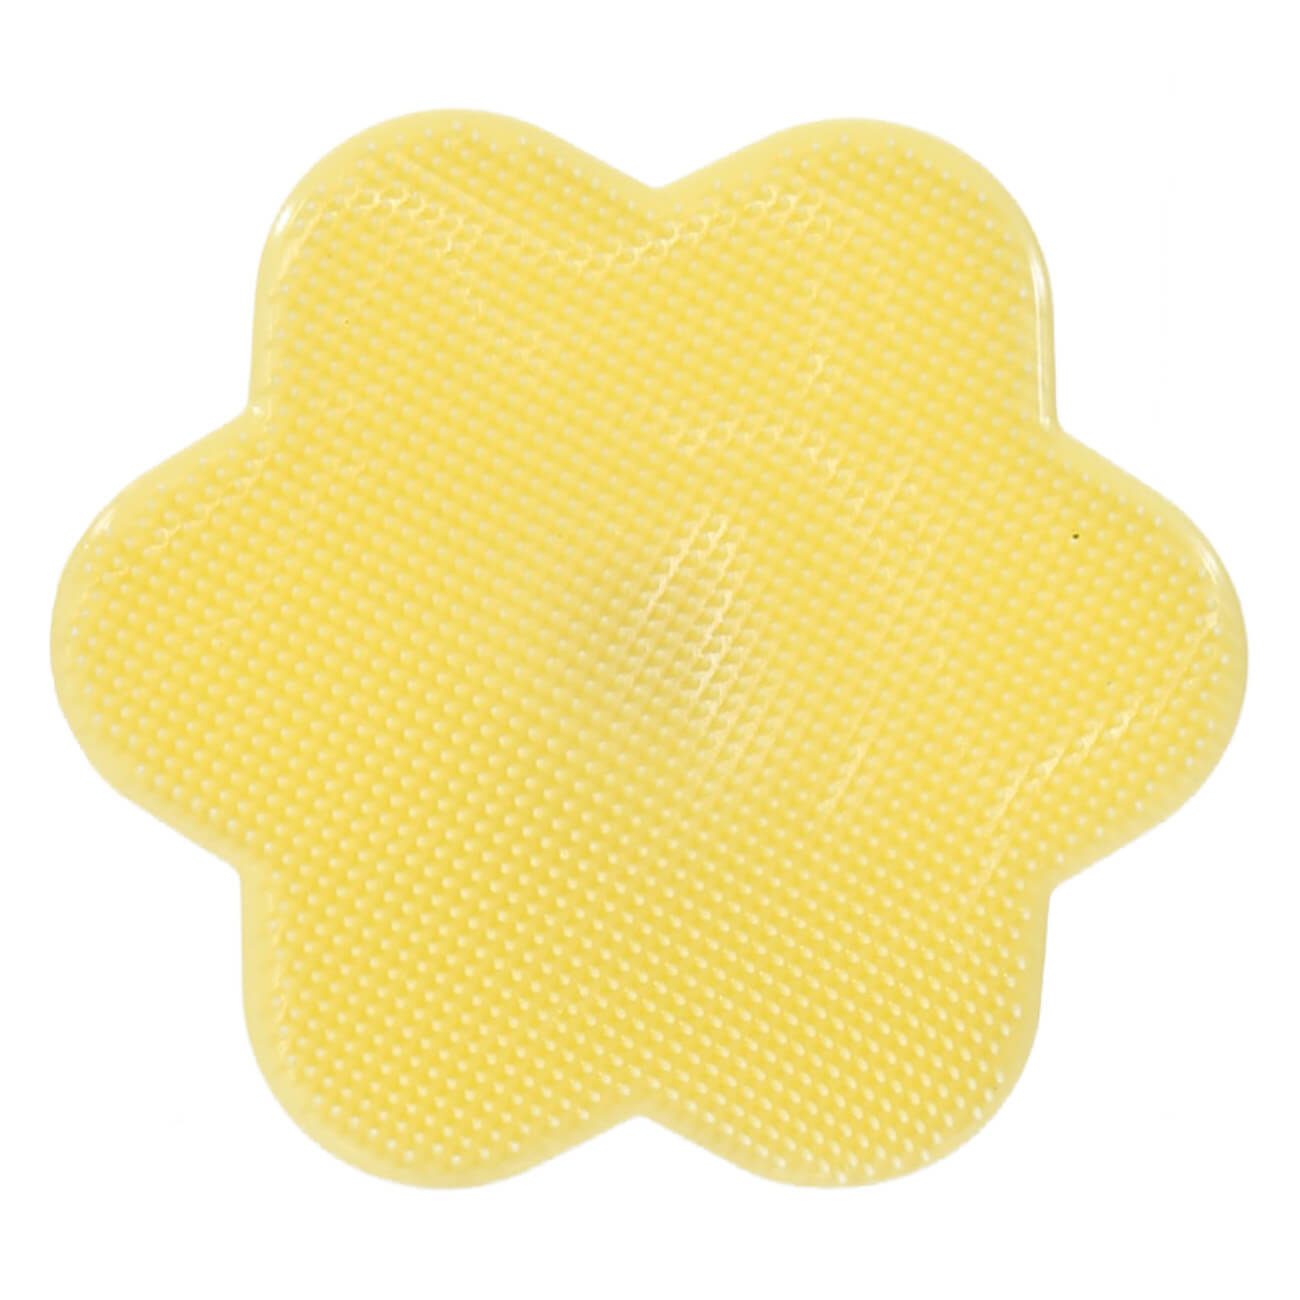 Щетка для очищения лица, 8 см, массажная, на присоске, силикон, желтая, Звезда, Manny изображение № 1